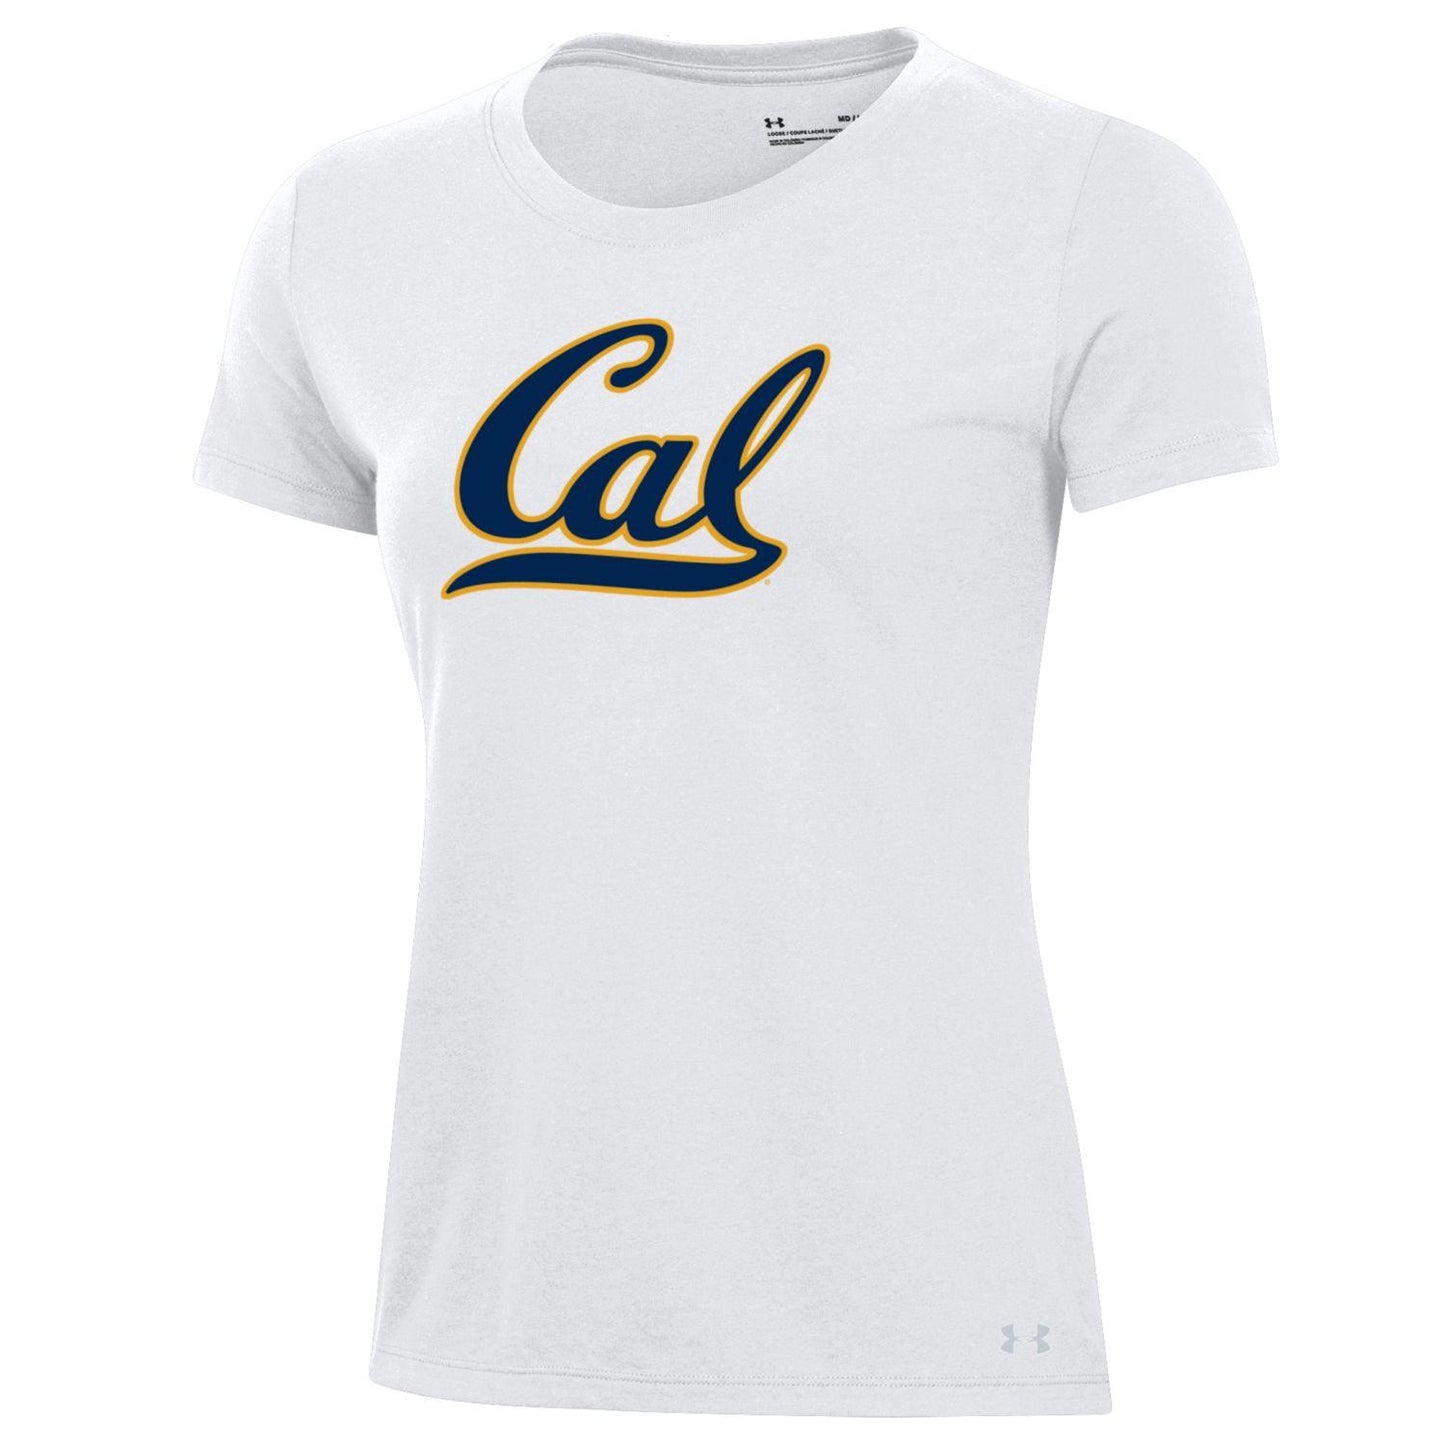 U.C. Berkeley Under Armour Script Cal performance cotton T-Shirt-White-Shop College Wear